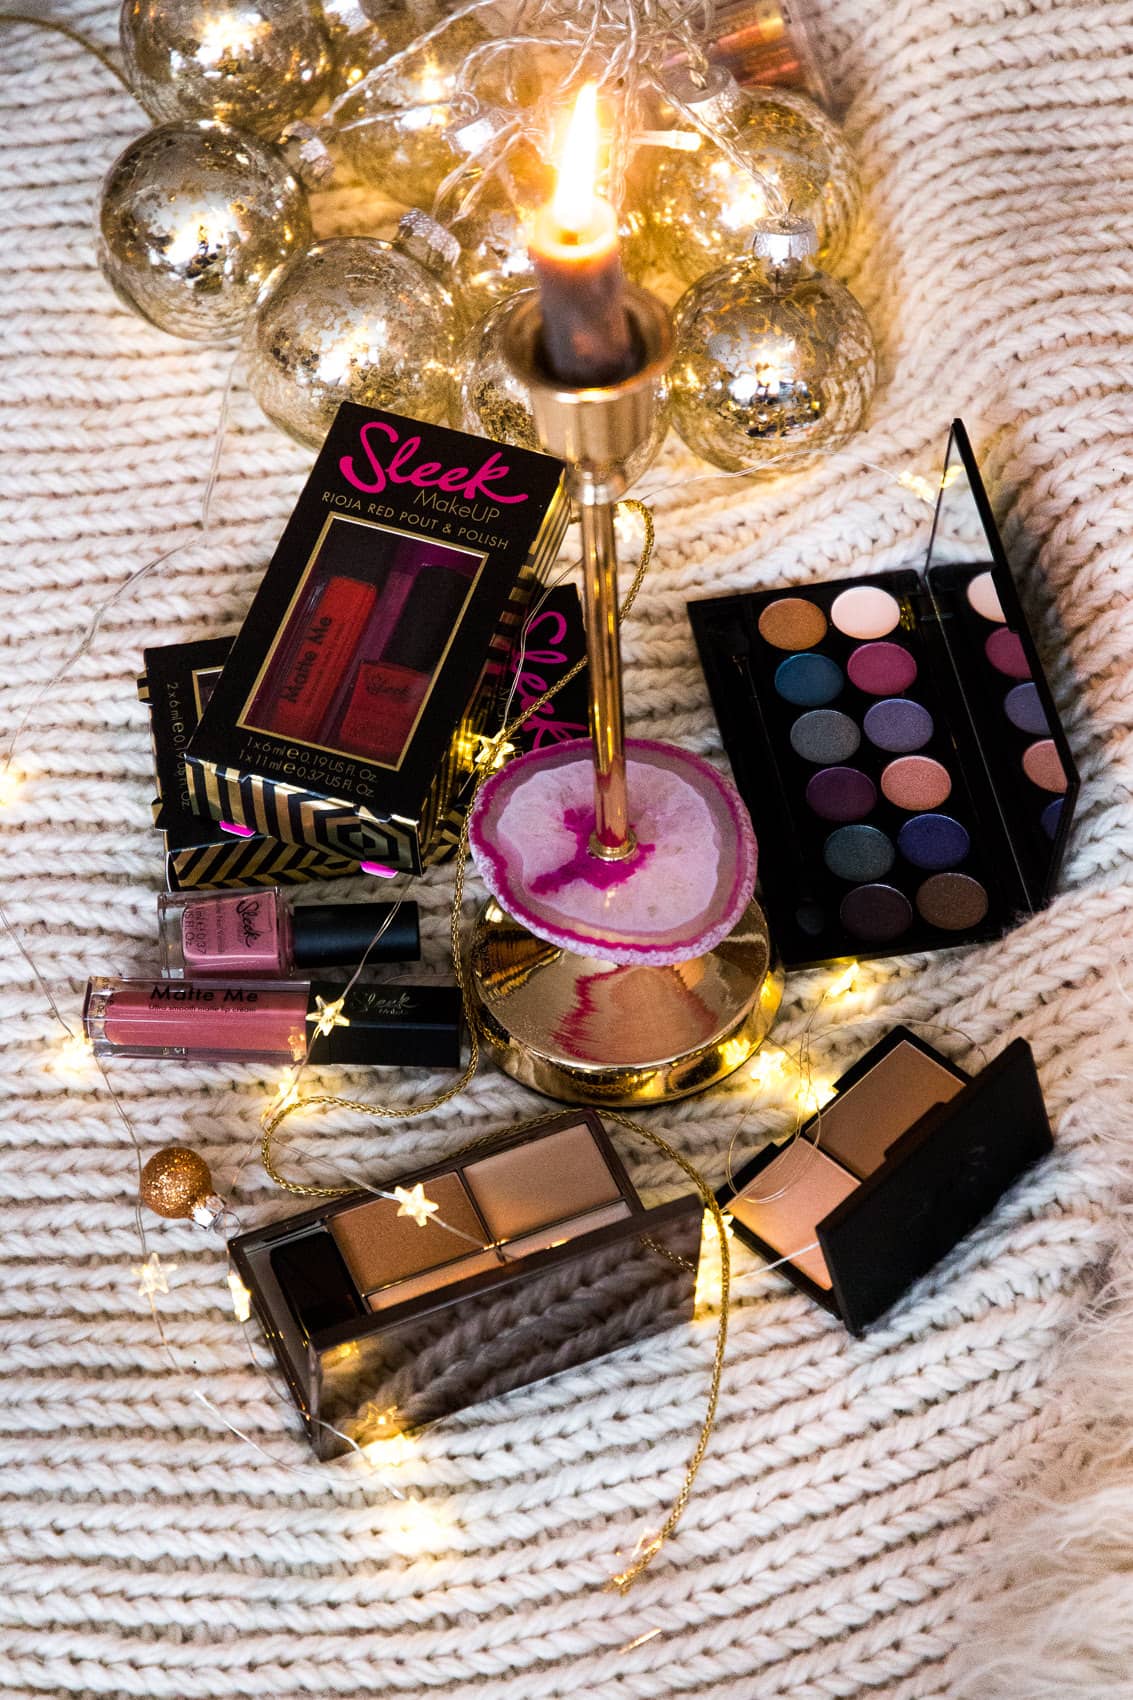 Des Belles Choses Adventskalender Türchen 18: Sleek Make-Up Set